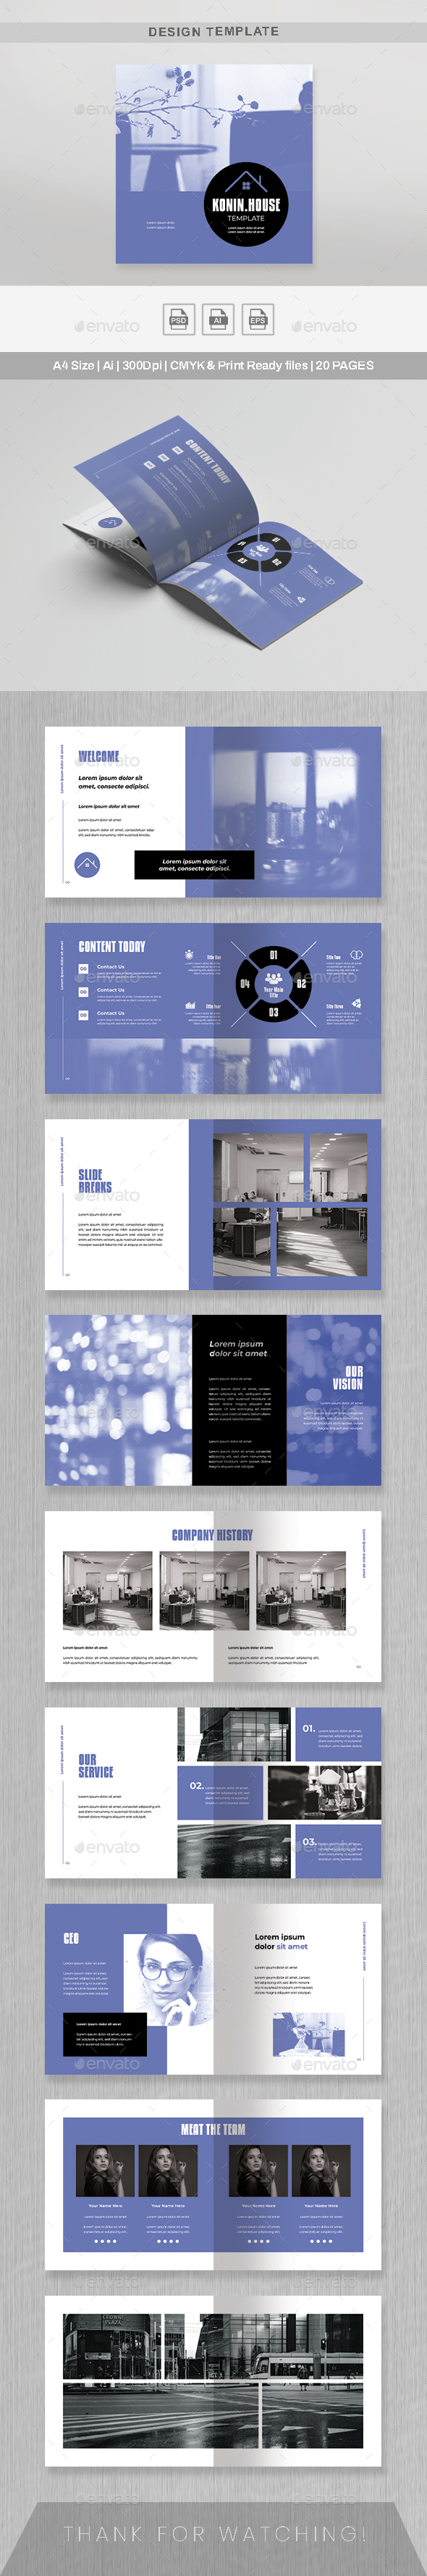 Square Business Portfolio Catalogue